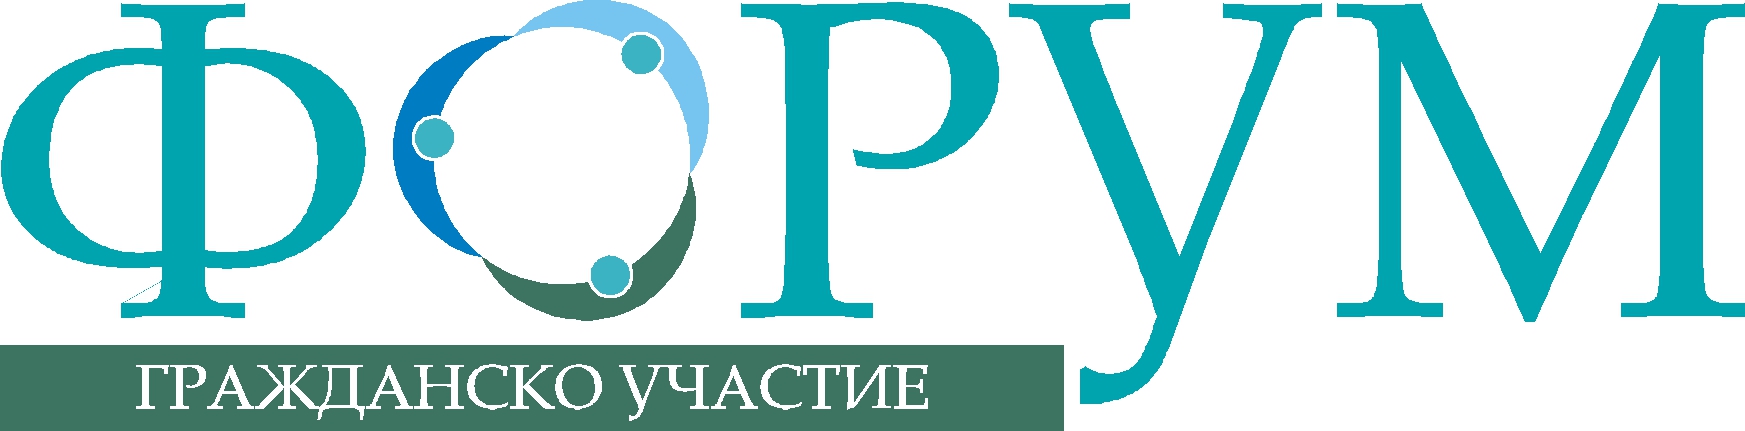 ФГУ с коментар относно предложенията за промени в Закона за прякото участие на гражданите